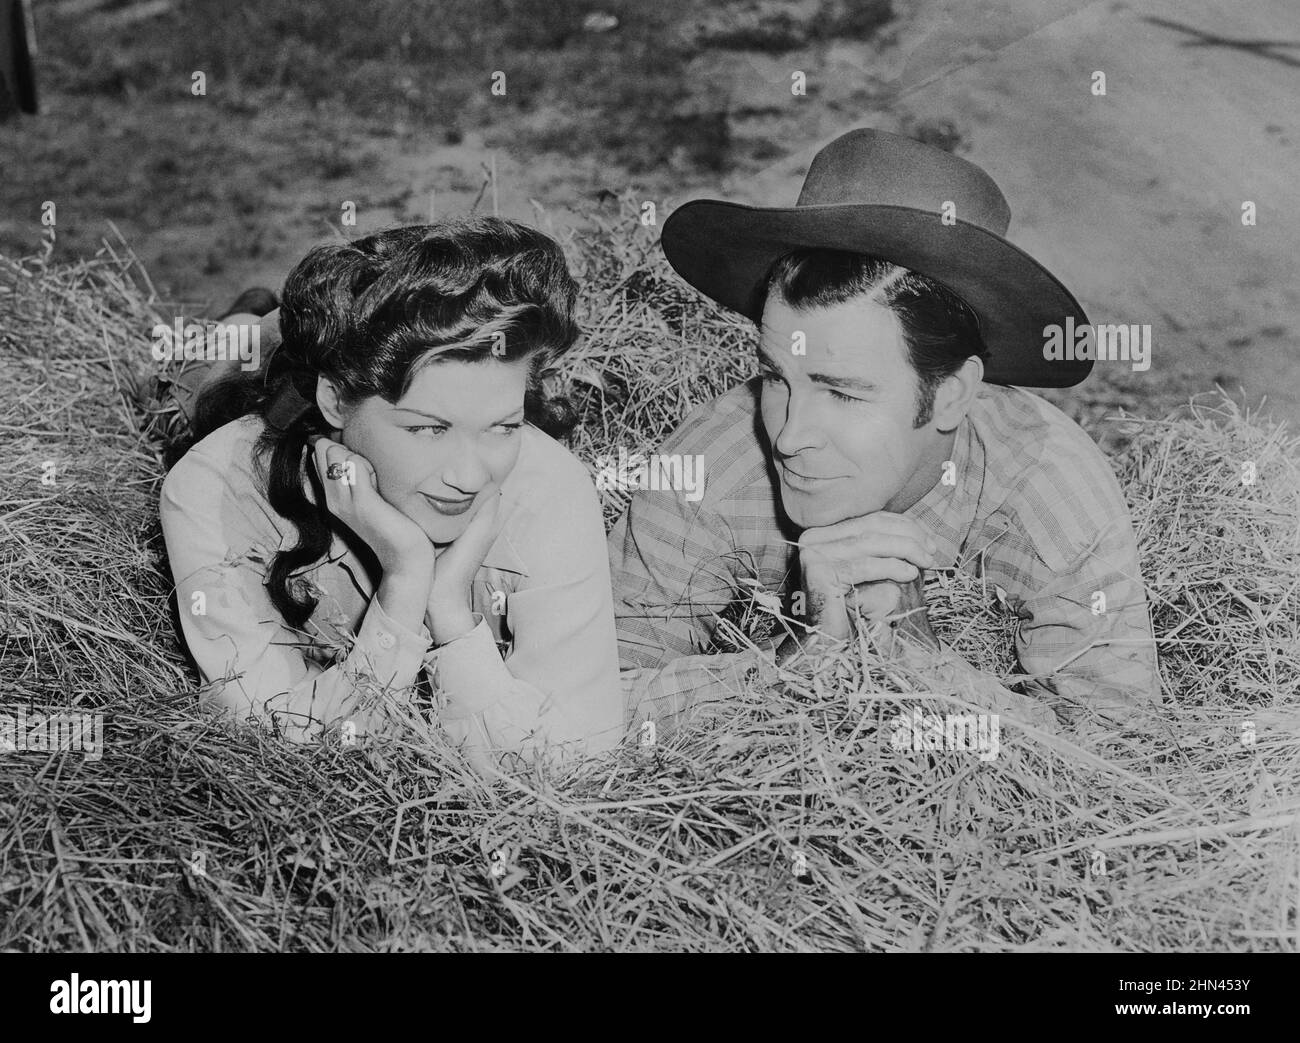 Rod Cameron (1910-1983), actor canadiense, junto a Yvonne De Carlo (1922-2007), actriz estadounidense de origen canadiense, en una escena de la película La dama de la frontera. Stock Photo